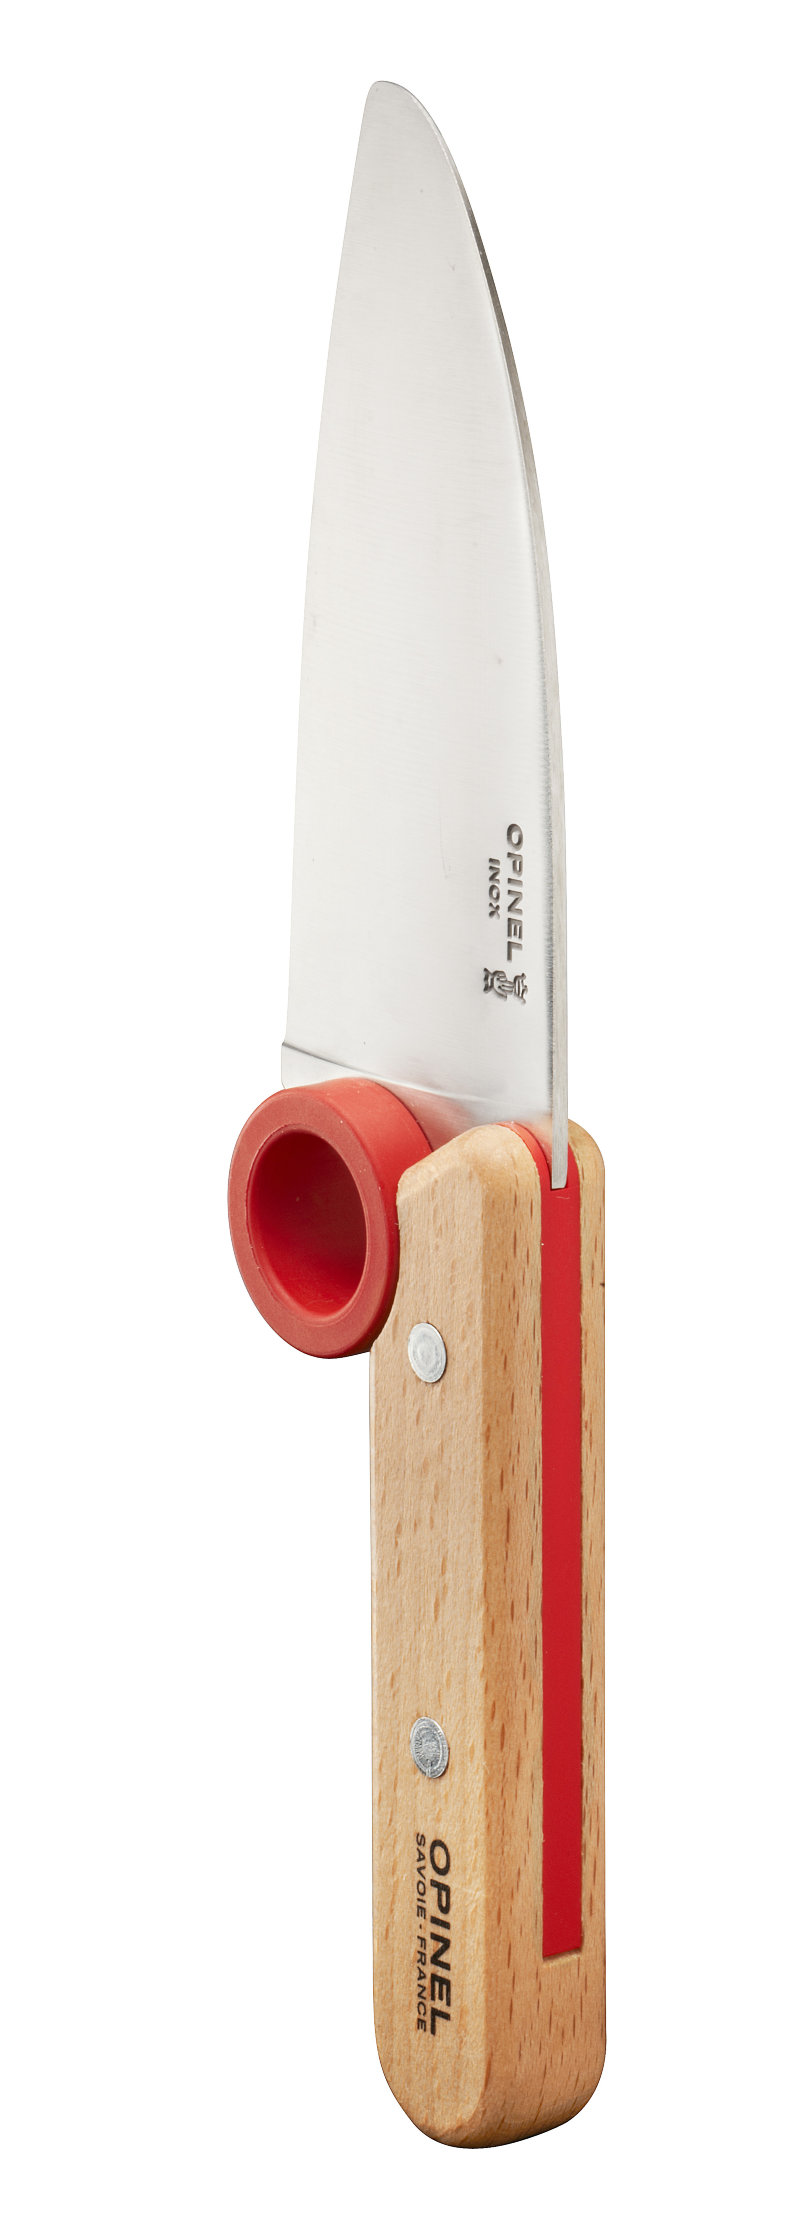 Набор ножей Opinel Le Petit Chef Set (Нож шеф-повара+нож для овощей+защита пальцев), 001746